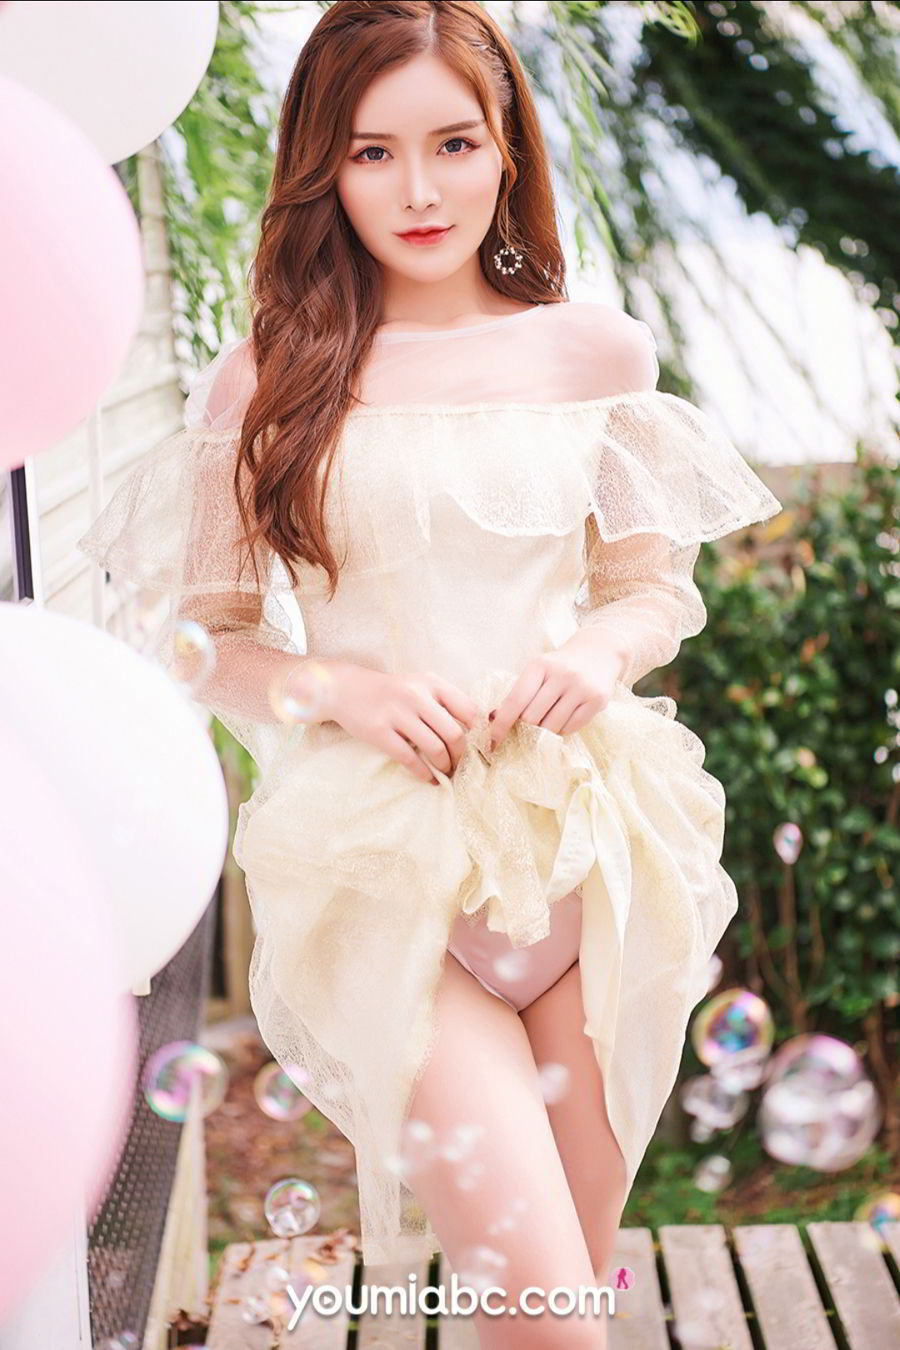 美女模特陈宇曦粉嫩大长腿甜蜜の告白主题写真